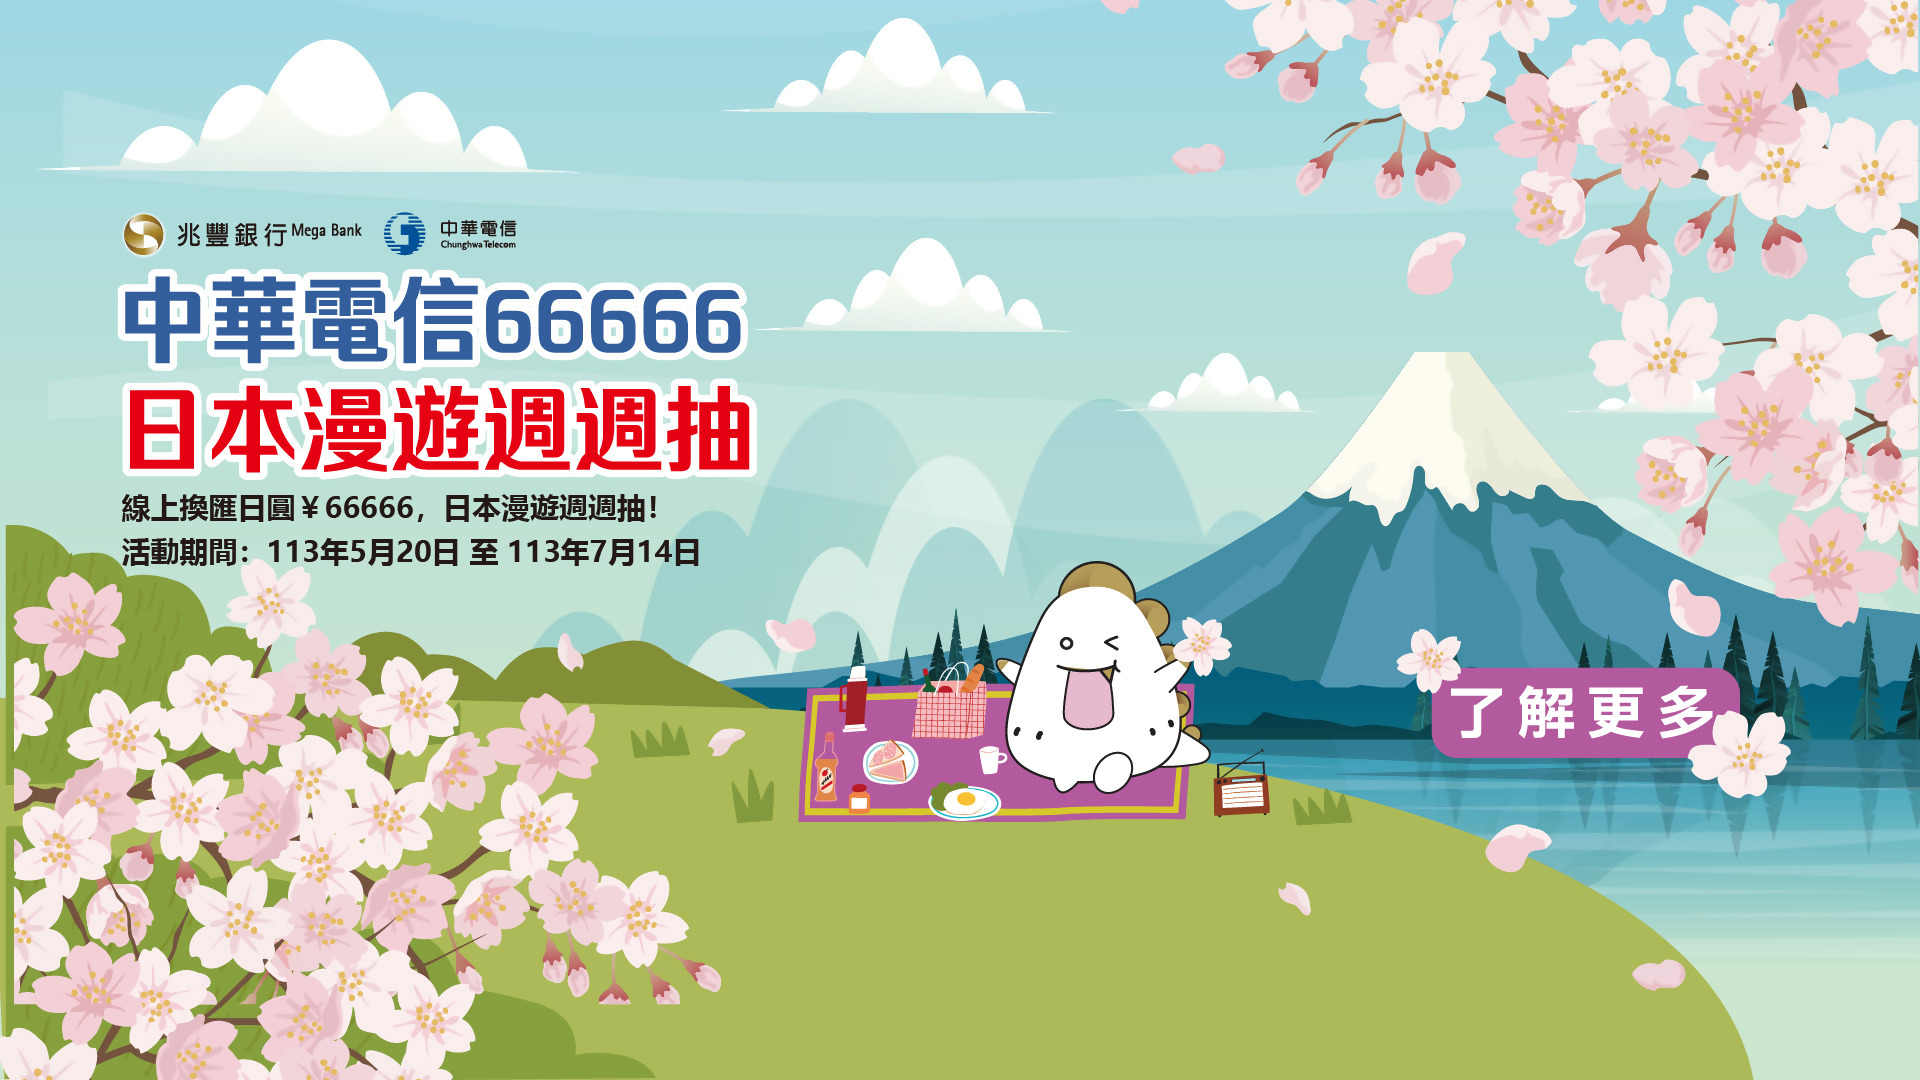 「中華電信66666日本漫遊週週抽」Banner